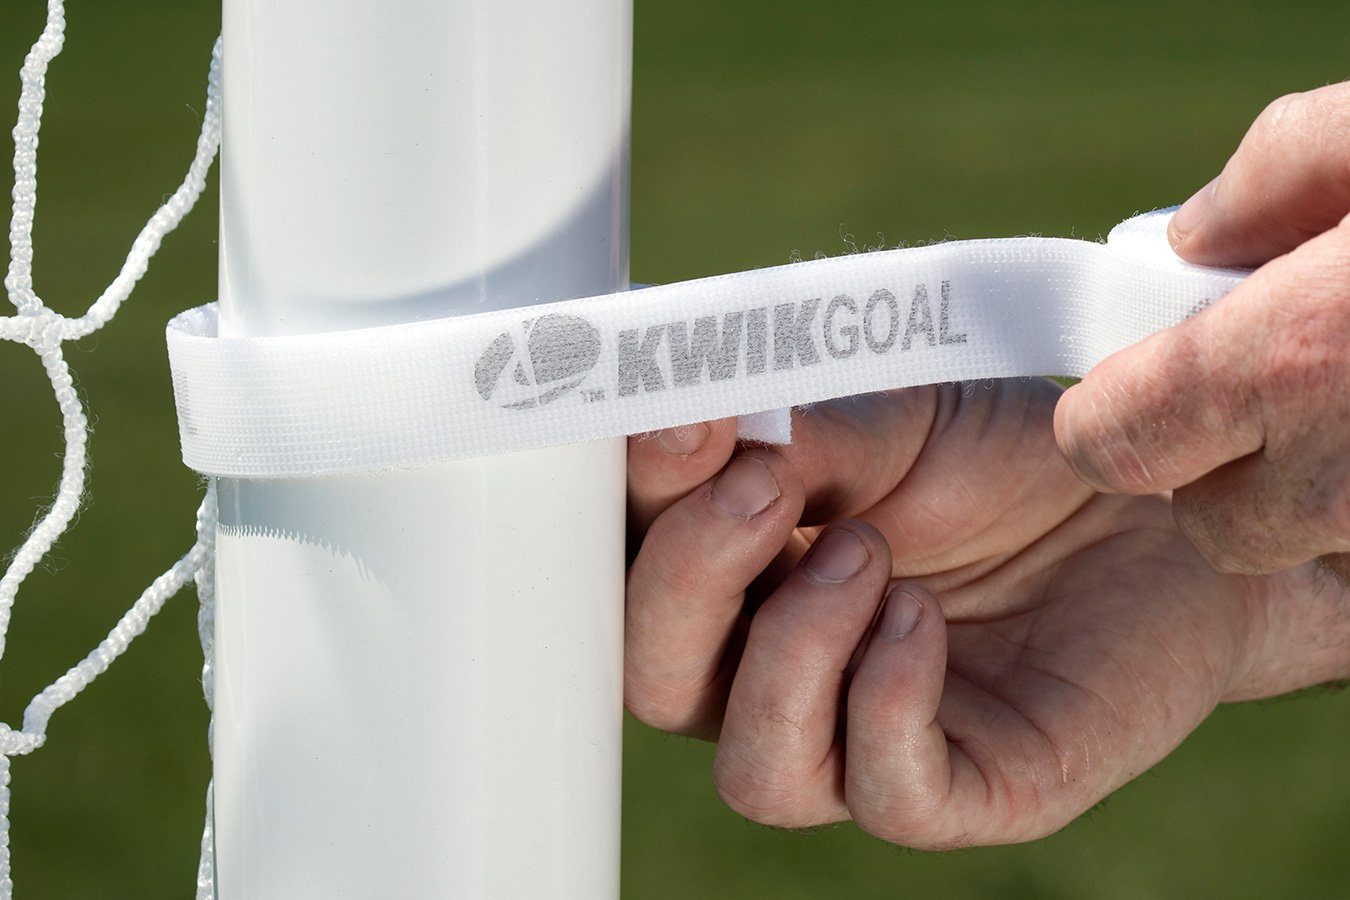 Kwikgoal Net Fastener | MNF-1 Goal accessories Kwikgoal 